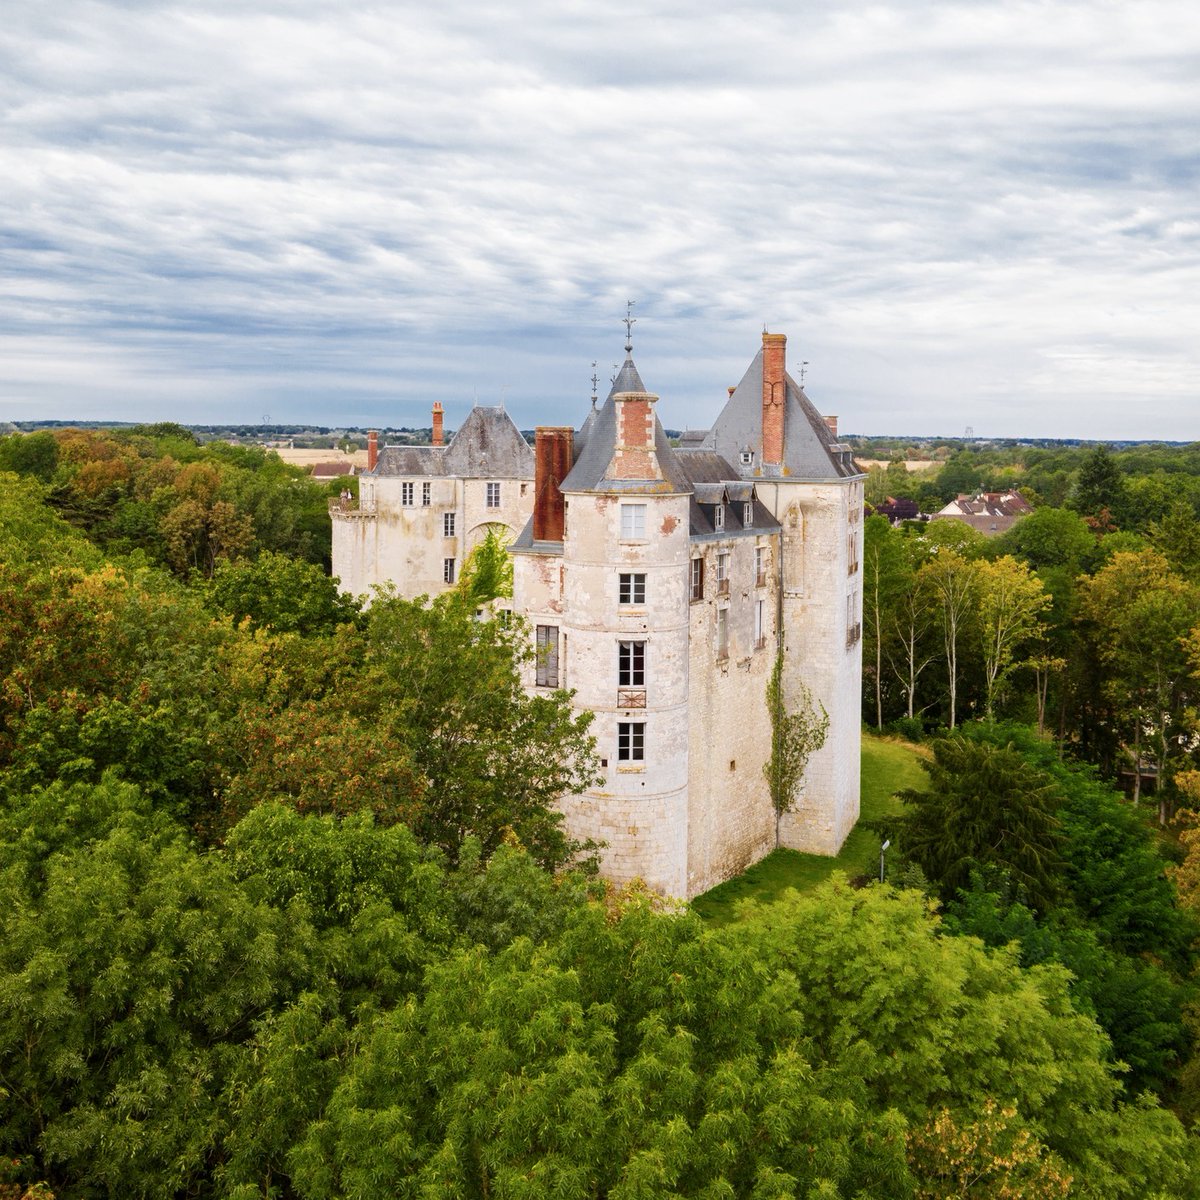 Le château de Saint-Brisson-sur-Loire 🏰 Situé dans le Loiret, c’est le Château de la Loire situé le plus en amont sur le fleuve, il se situe aux confins du Berry et aux portes de l’Orléanais. Crédit 📸 : ©@chateaudesaintbrisson sur Instagram